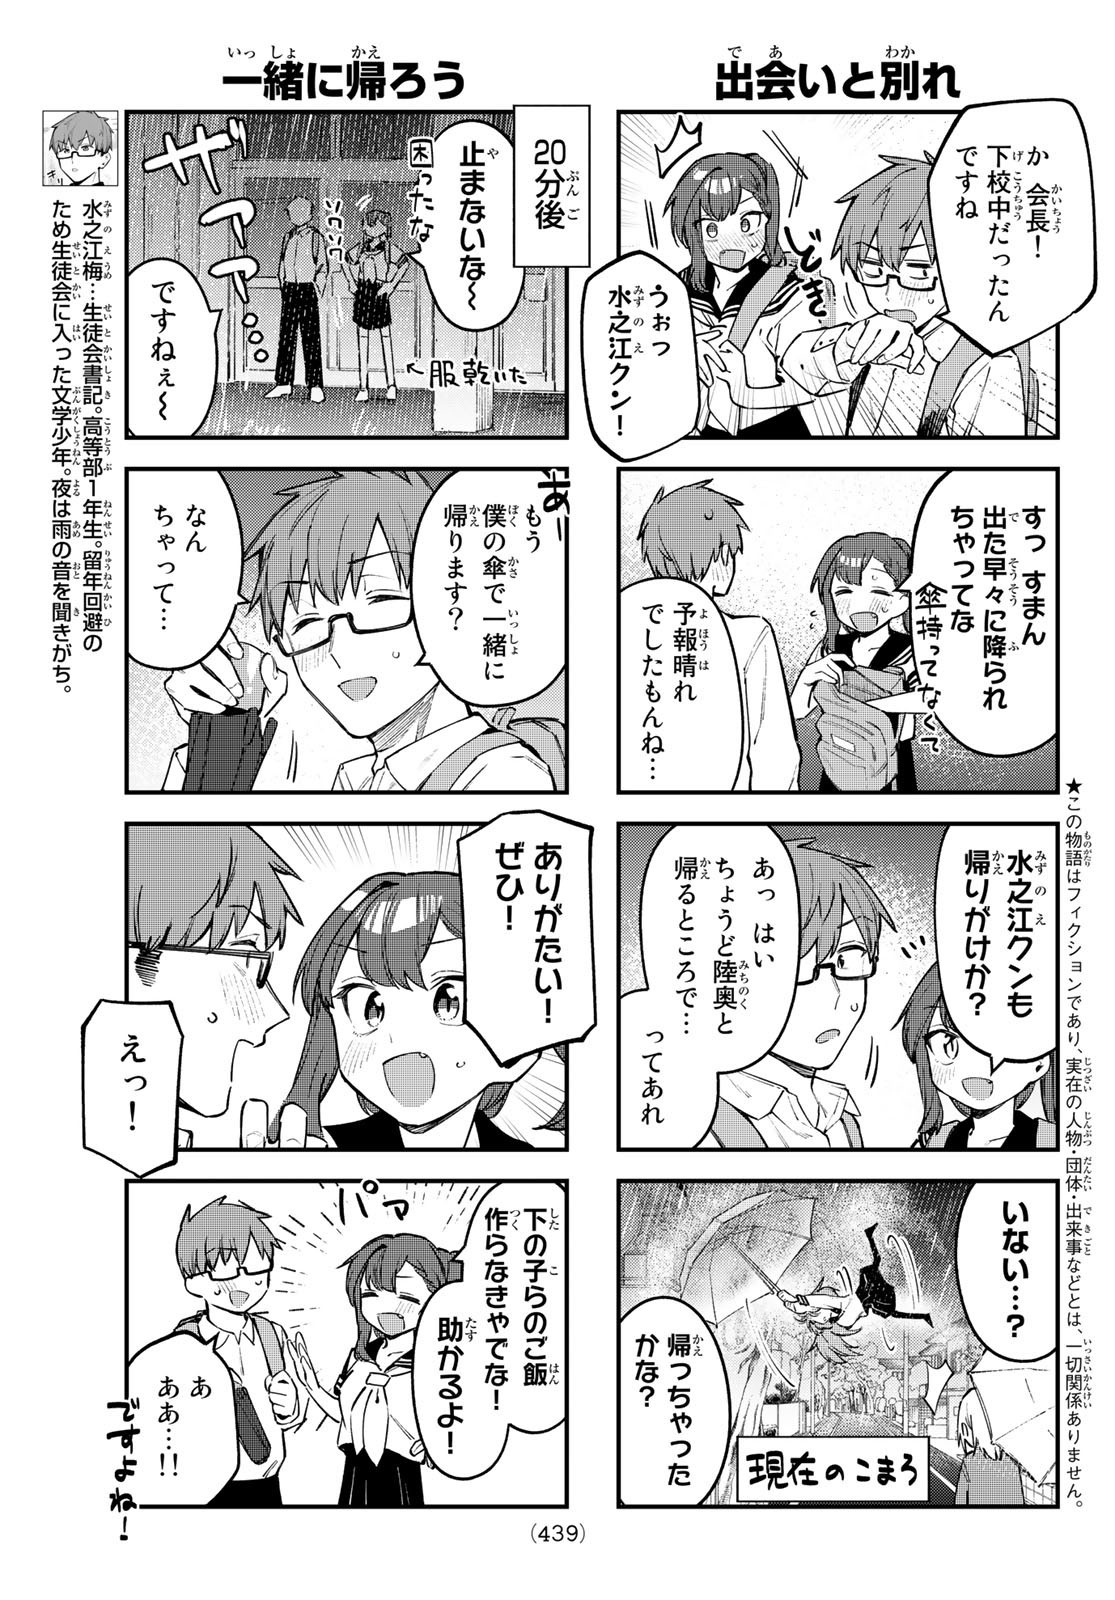 Seitokai ni mo Ana wa Aru! - Chapter 022 - Page 3